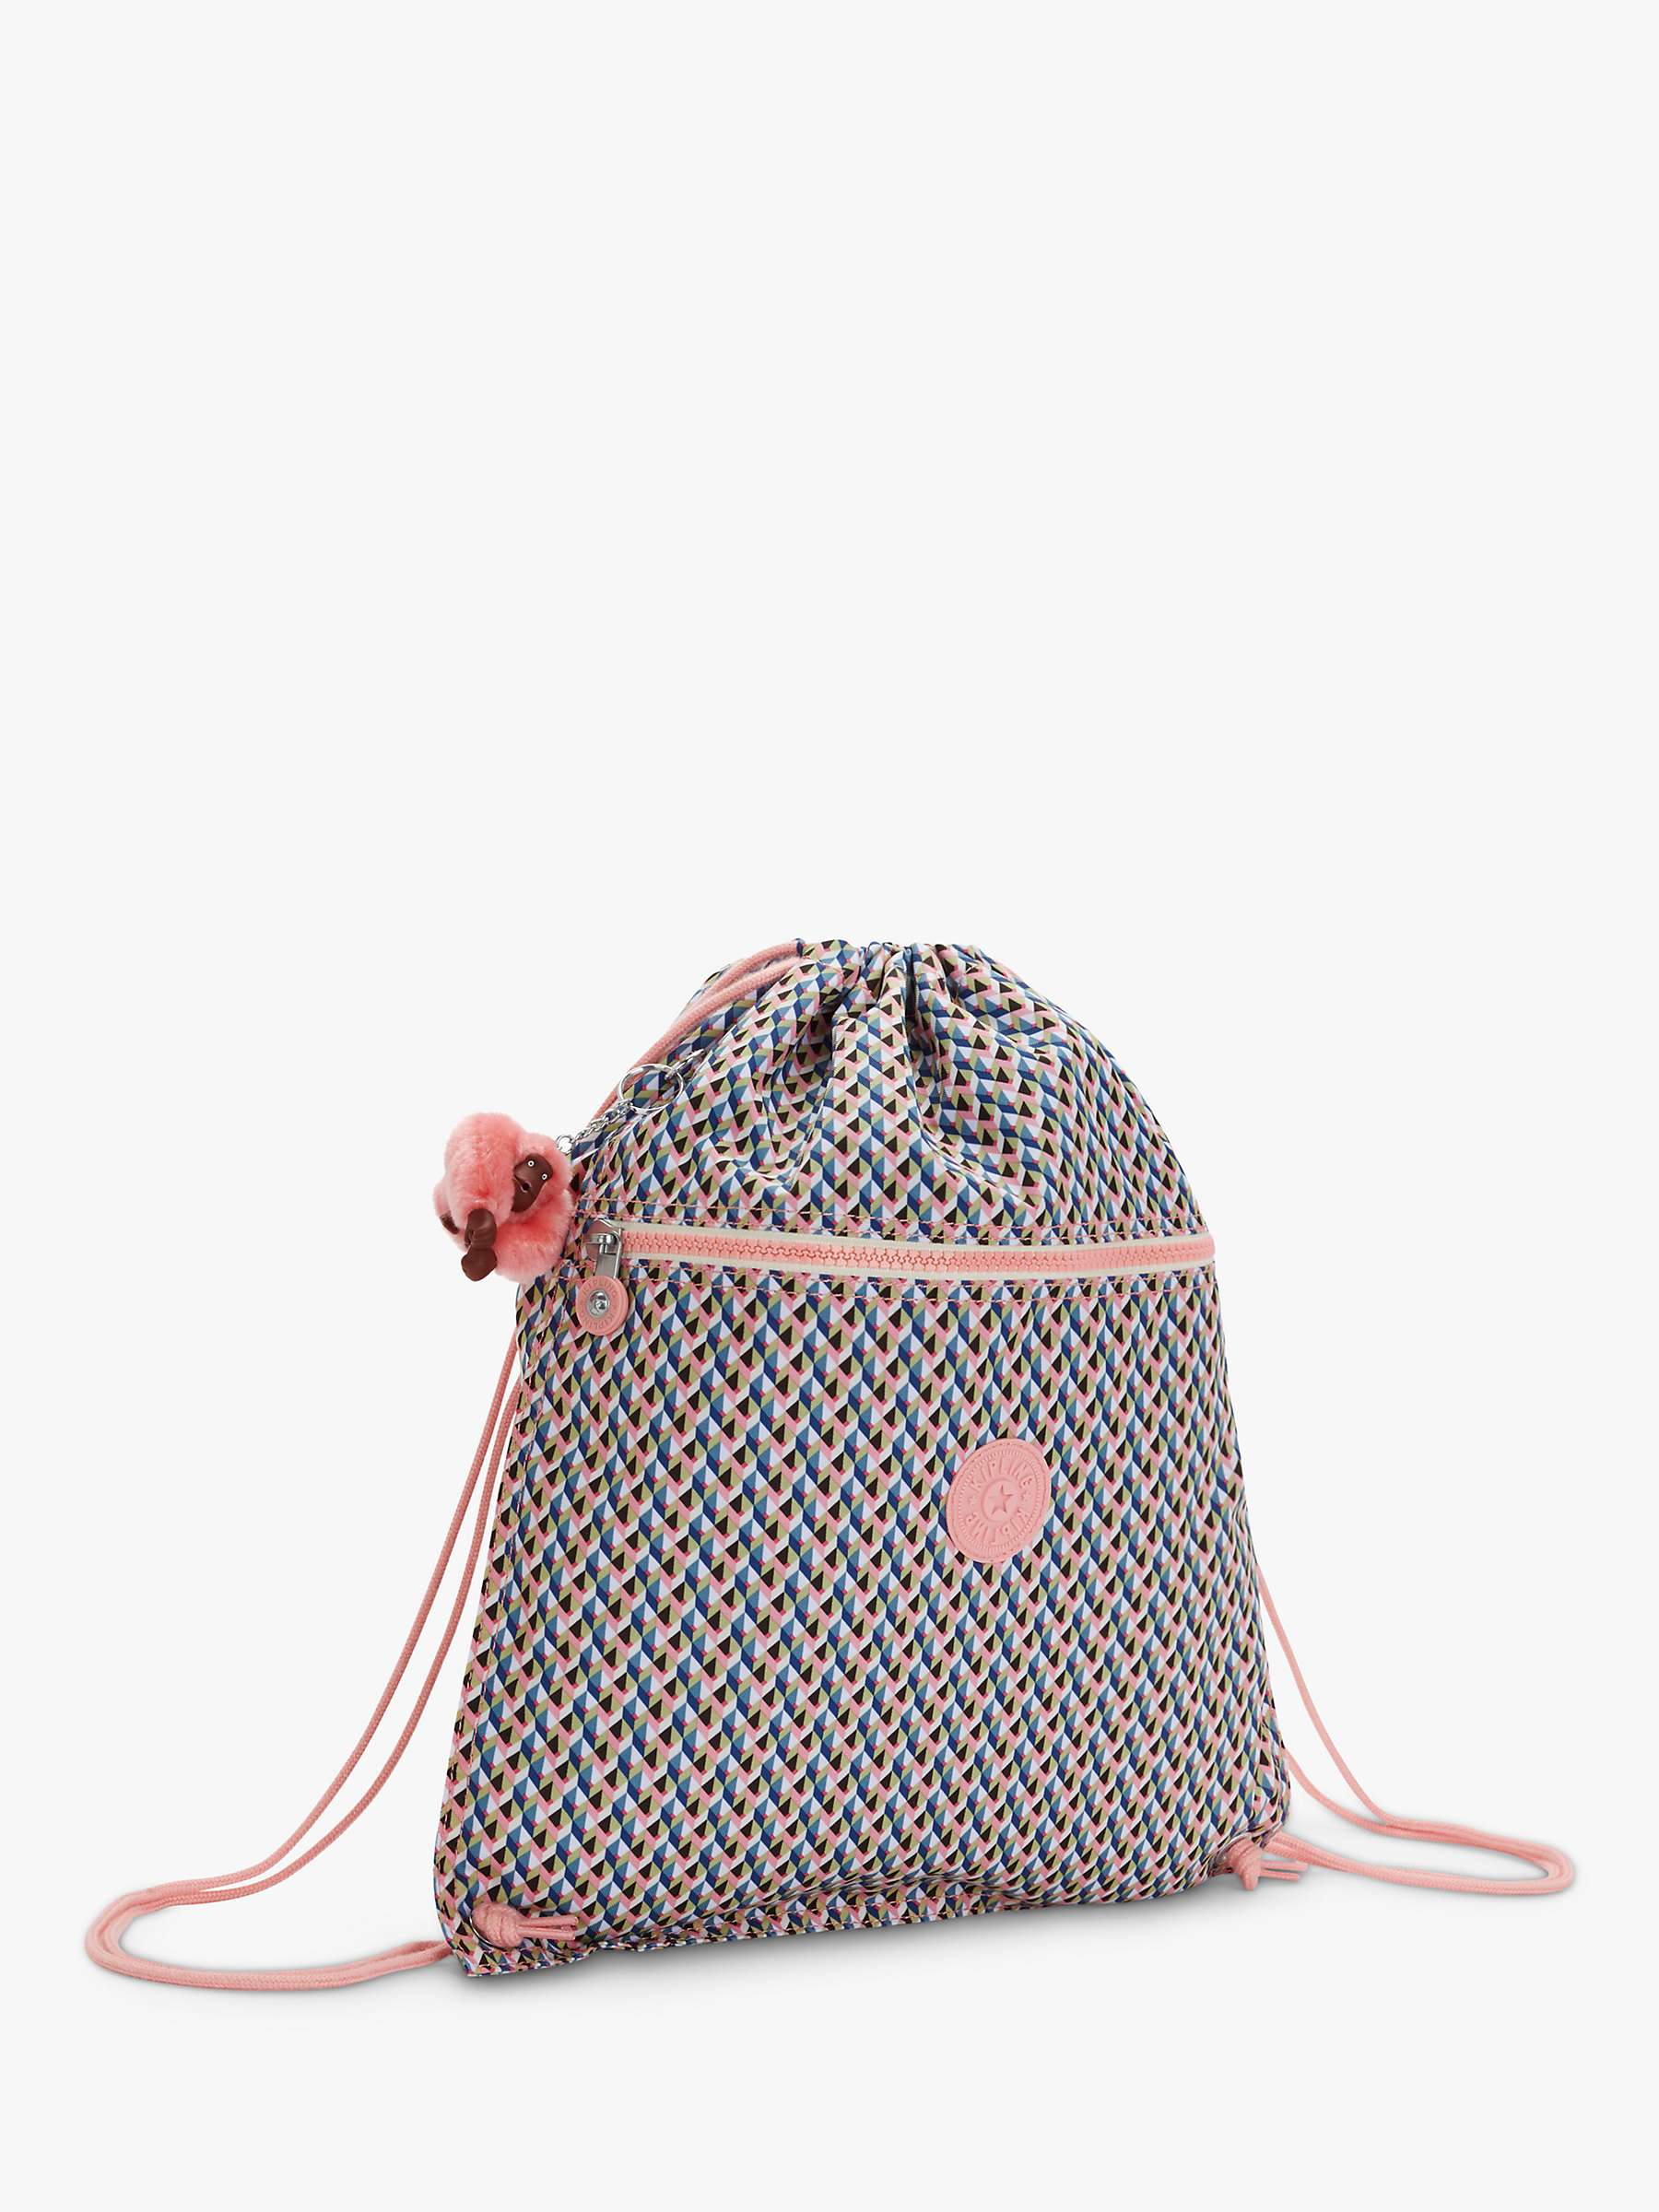 Buy Kipling Kids’ Supertaboo School Drawstring Backpack, Girly Geo Online at johnlewis.com